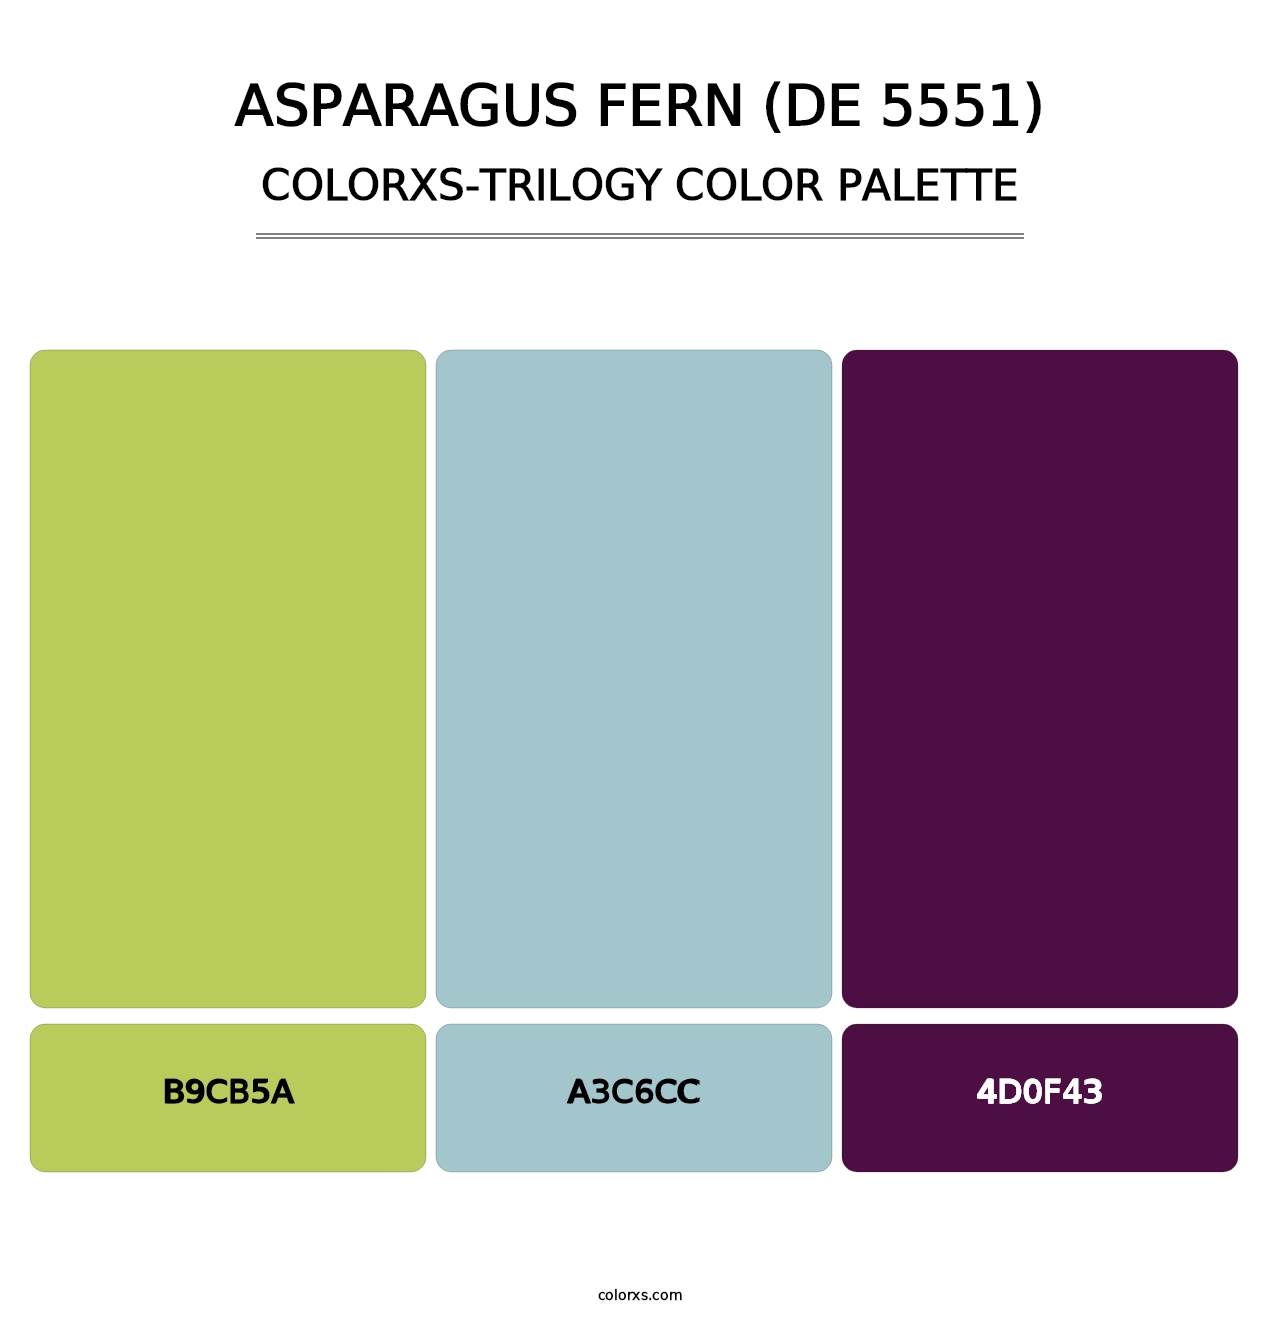 Asparagus Fern (DE 5551) - Colorxs Trilogy Palette